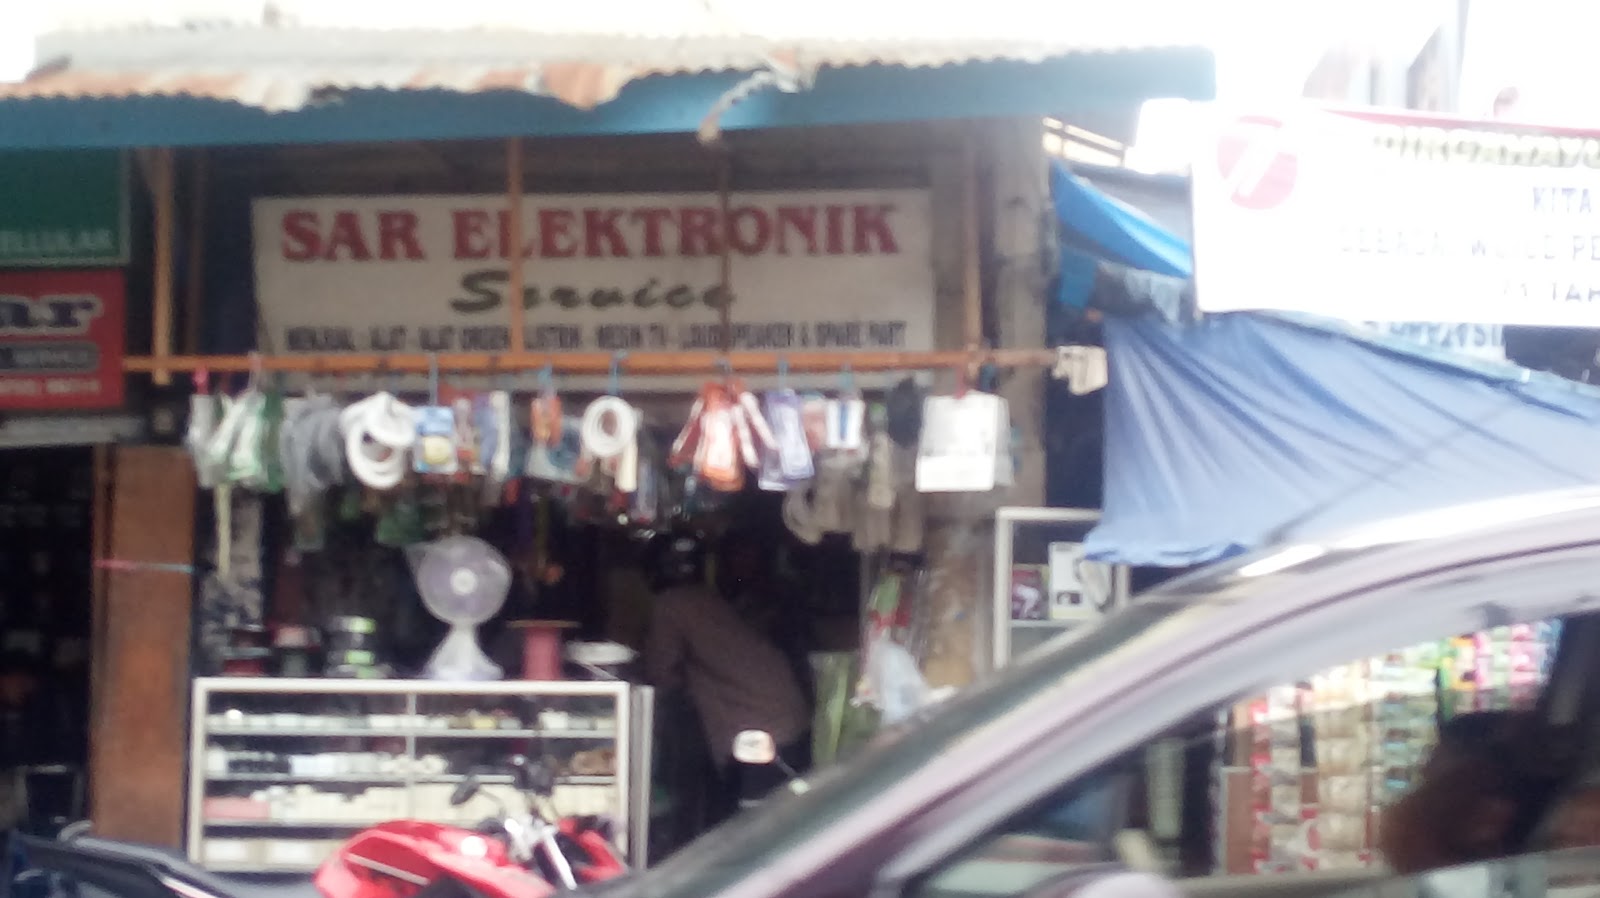 Sar Electronik Service Photo